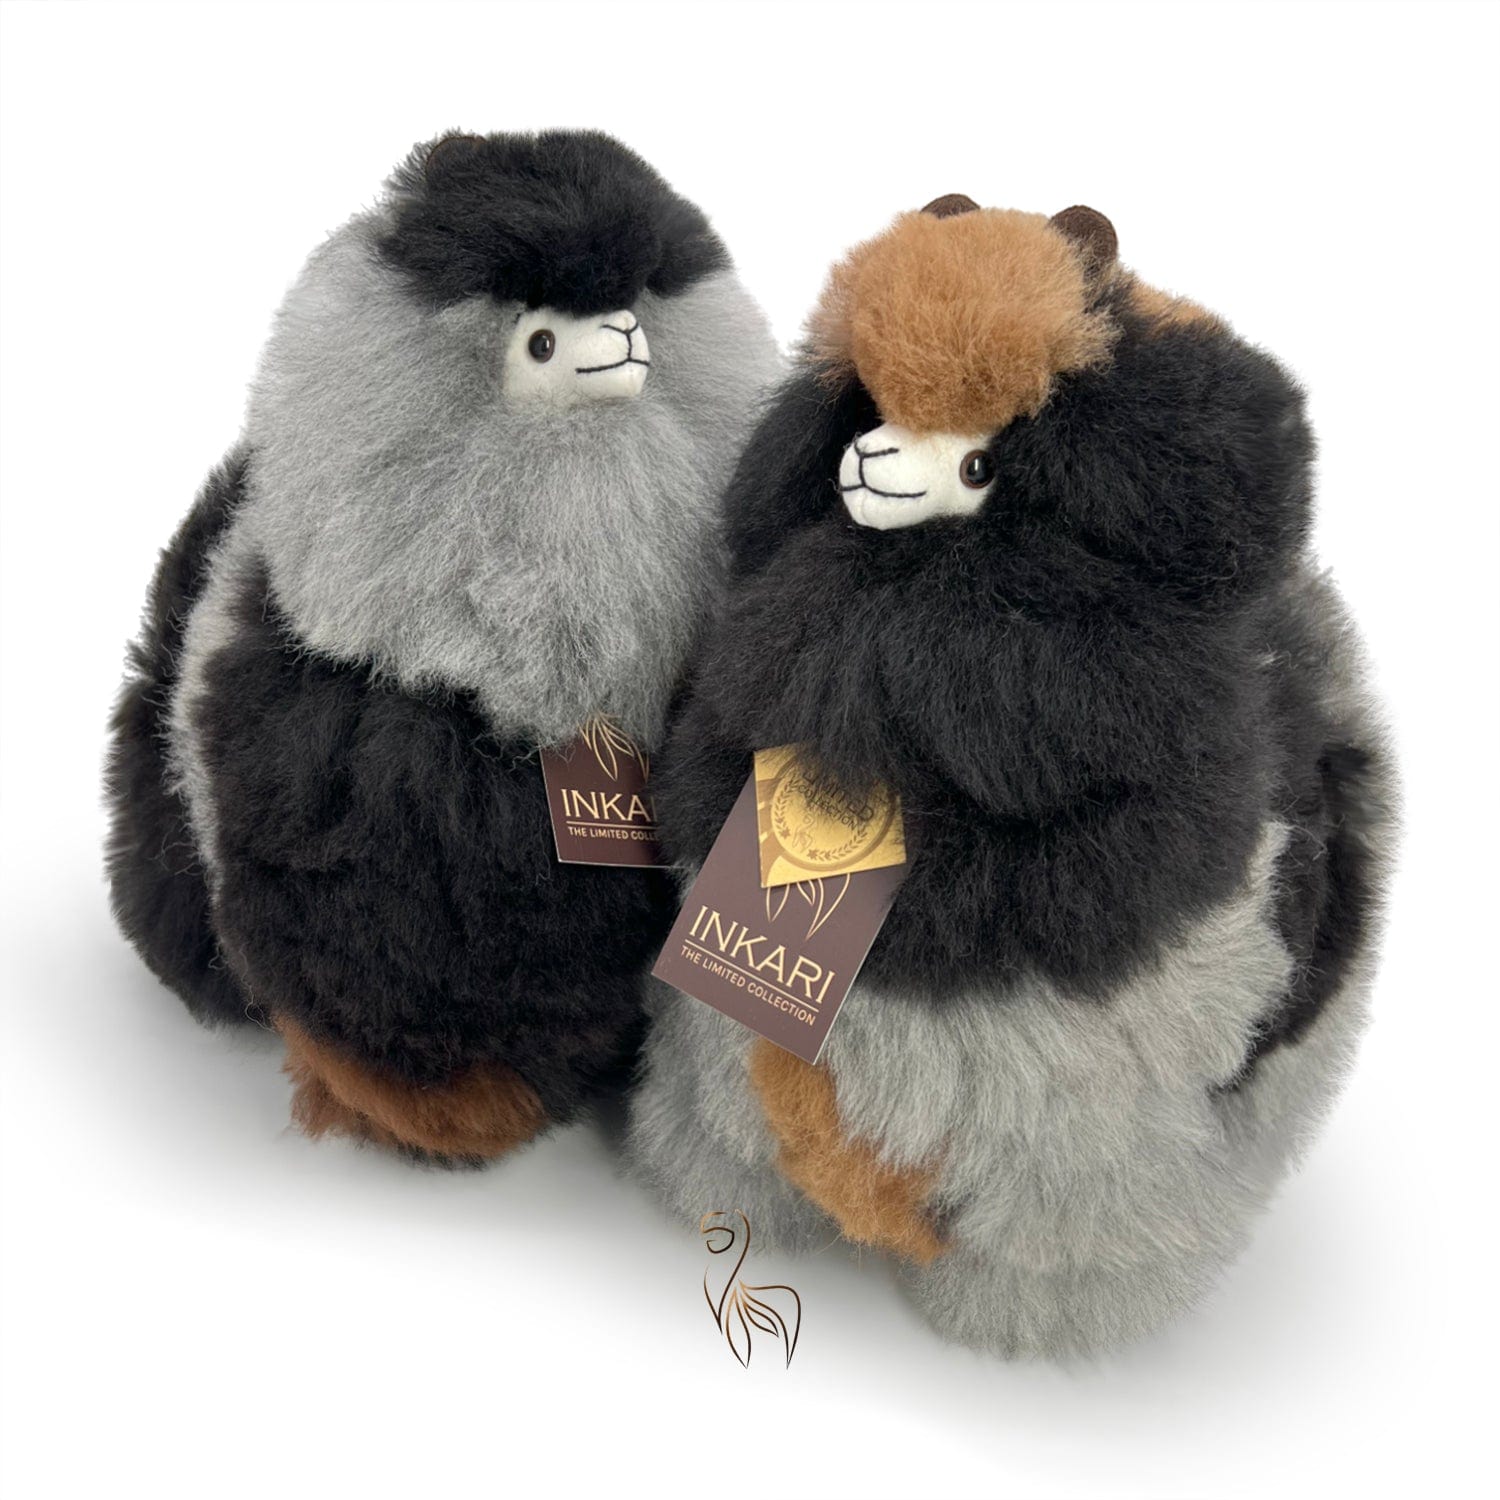 Grauer Fuchs – mittelgroßes Alpaka-Spielzeug (32 cm) – limitierte Auflage